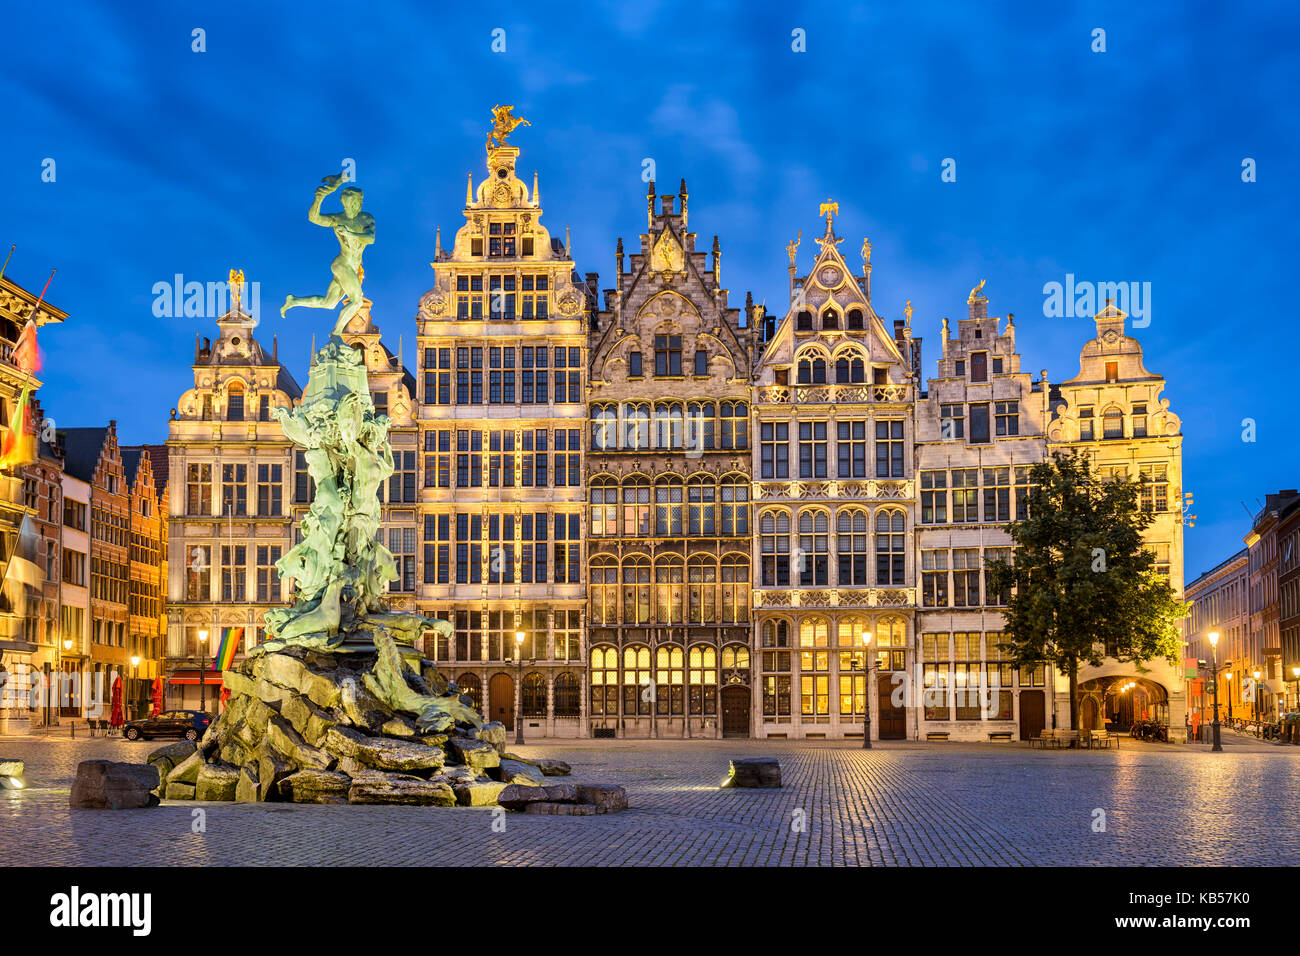 Grote Markt in Antwerp, Belgium at night Stock Photo